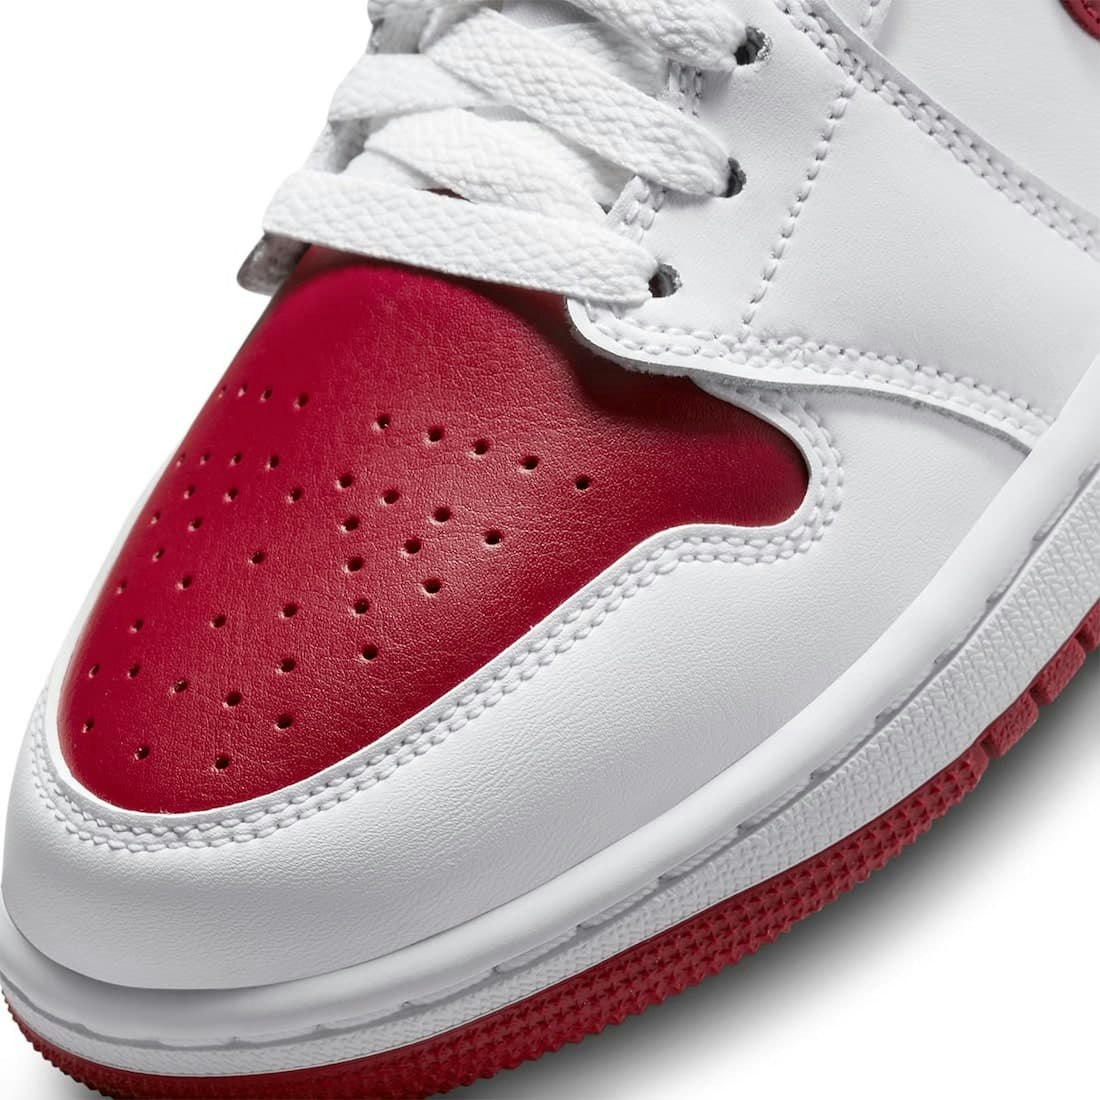 Air Jordan 1 Mid “Red Toe”